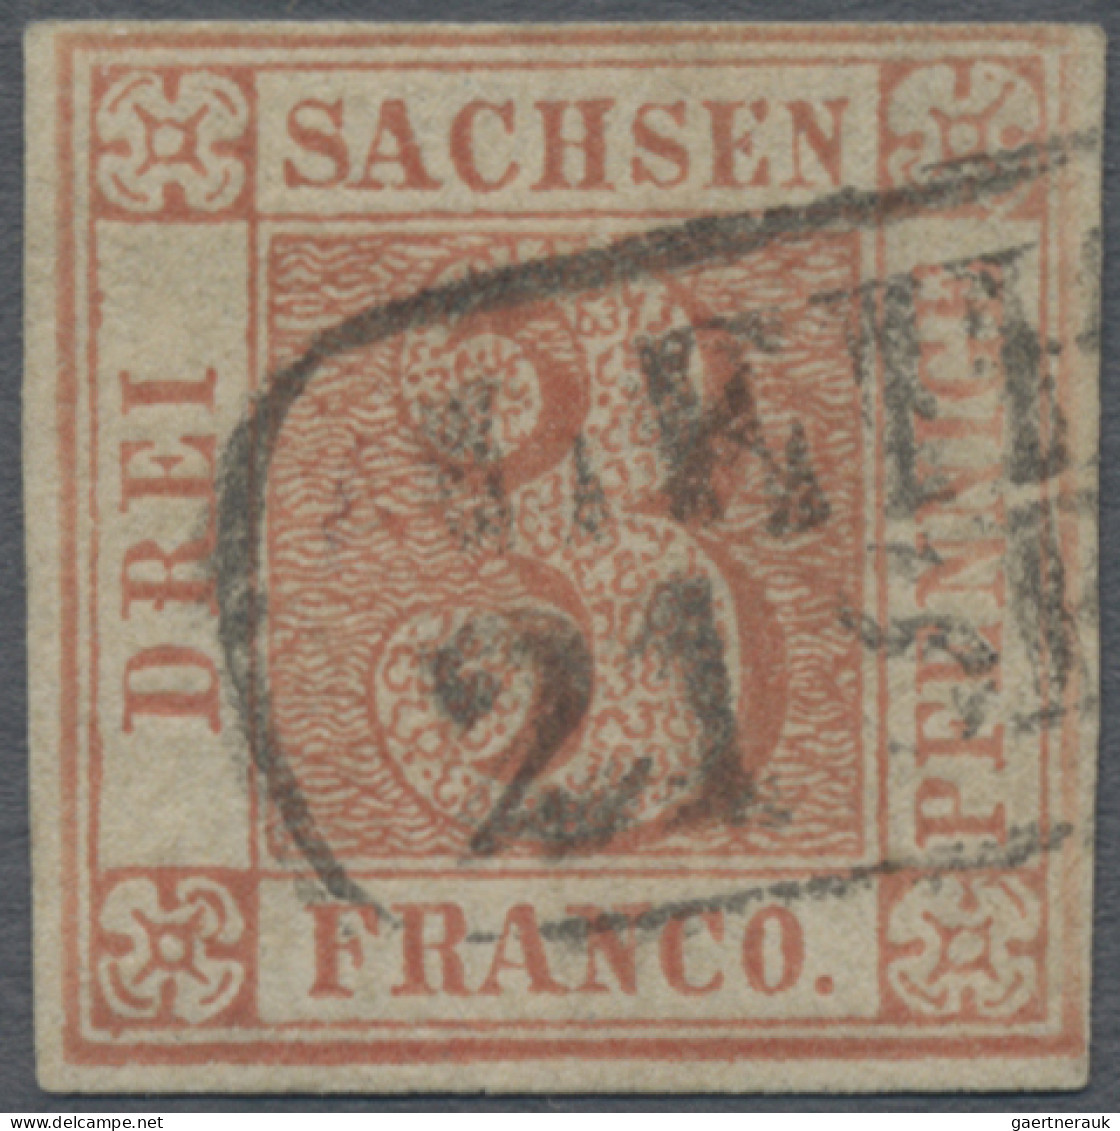 Sachsen - Marken Und Briefe: 1850, 3 Pfennige Lebhaftrot, Platte III, Position 1 - Sachsen